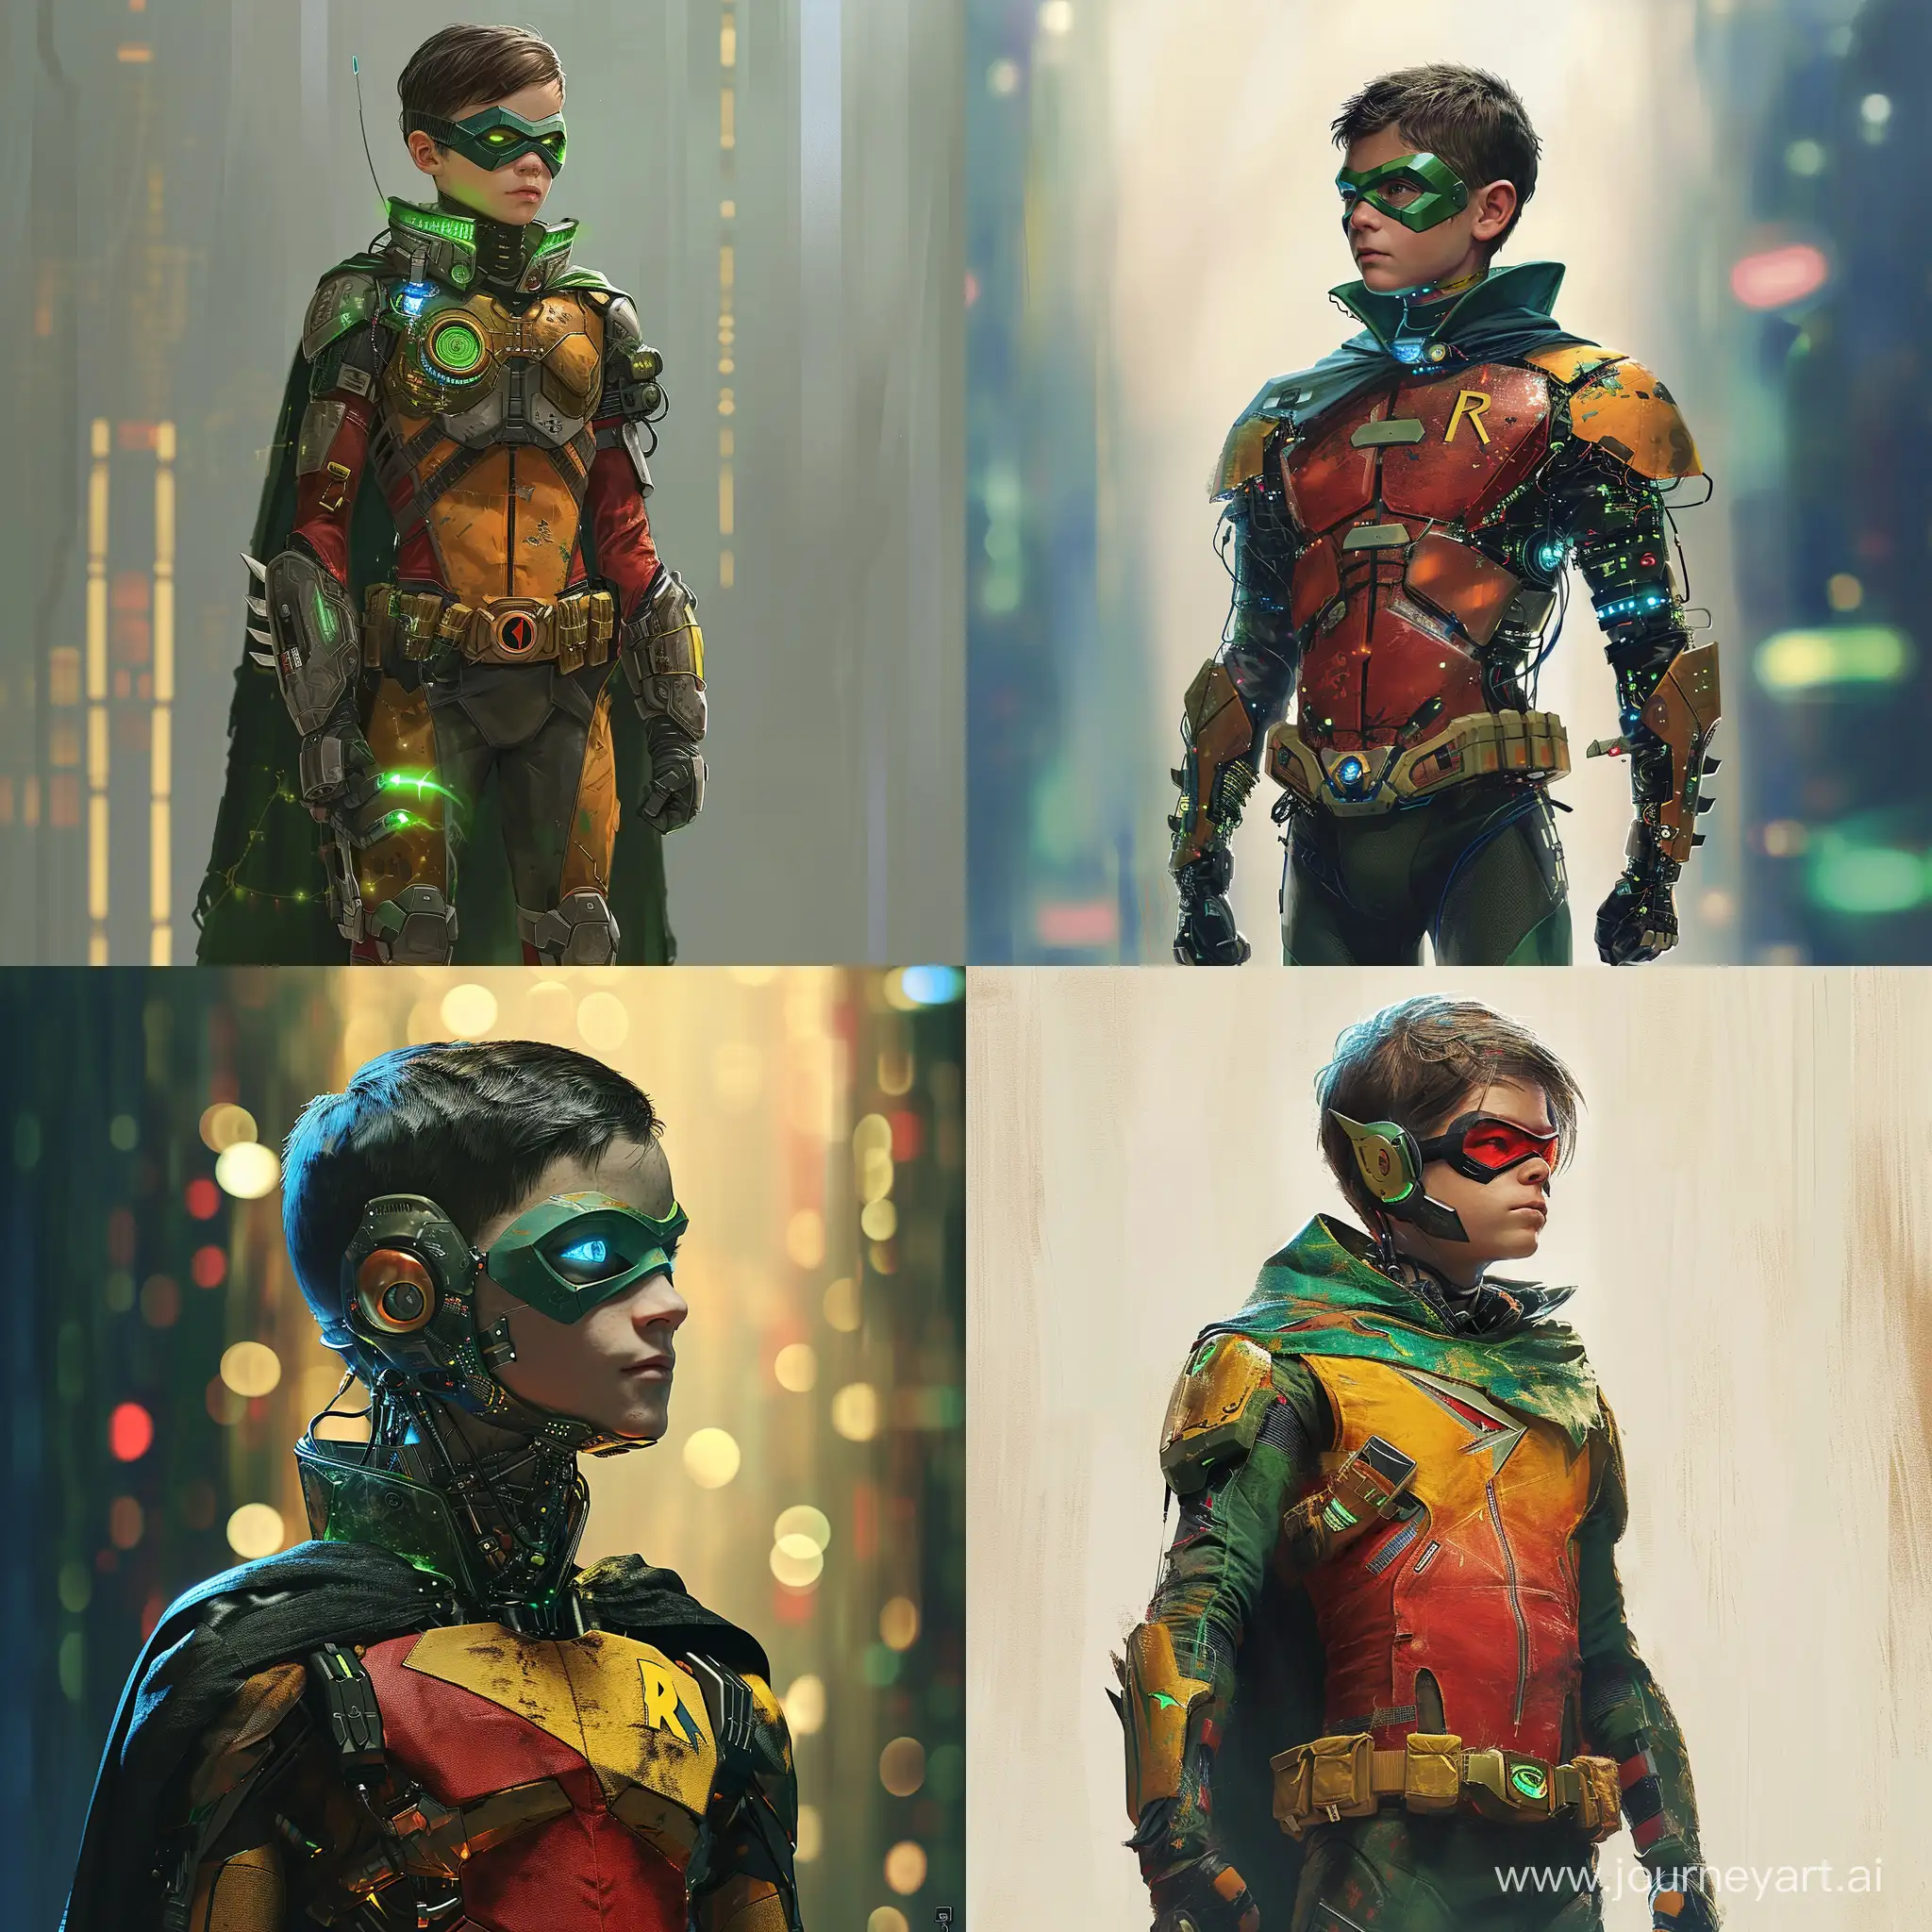 Futuristic-Teen-Titans-Robin-in-SciFi-Glory